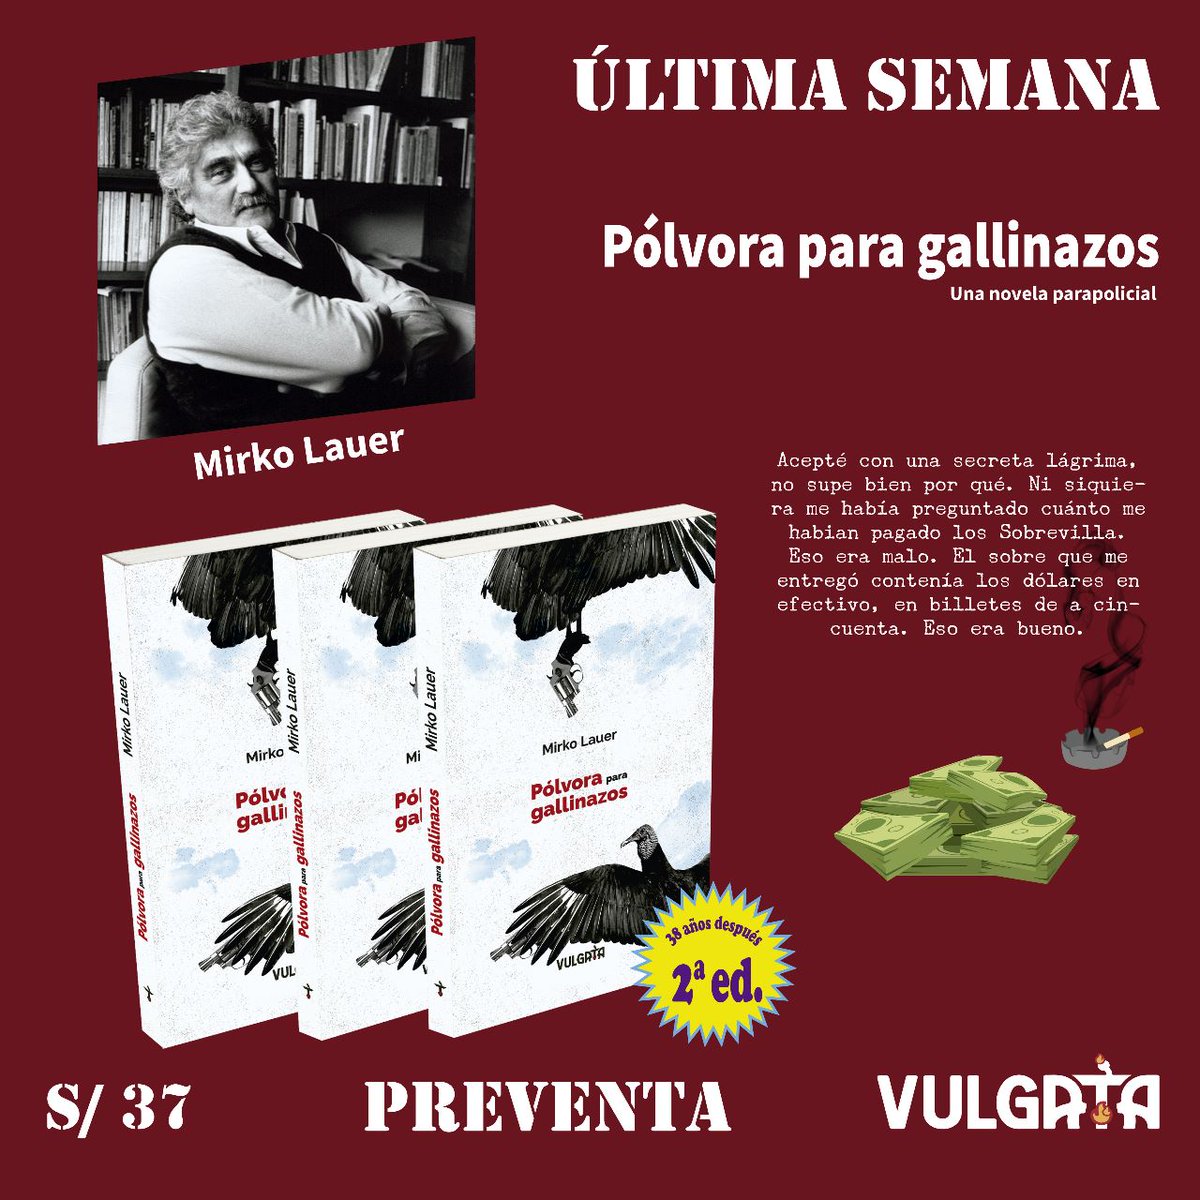 SESSION flyer #2 #1 #3 — 'Pólvora para gallinazos' de Mirko Lauer

#PREVENTA hasta el 16 de abril: S/ 37💰

Contáctanos por nuestras redes🌐

⭕No incluye costo de envío

#novelaparapolicial  #novelanegra #libros #lectura  #librosrecomendados #librosperuanos #novedadesliterarias